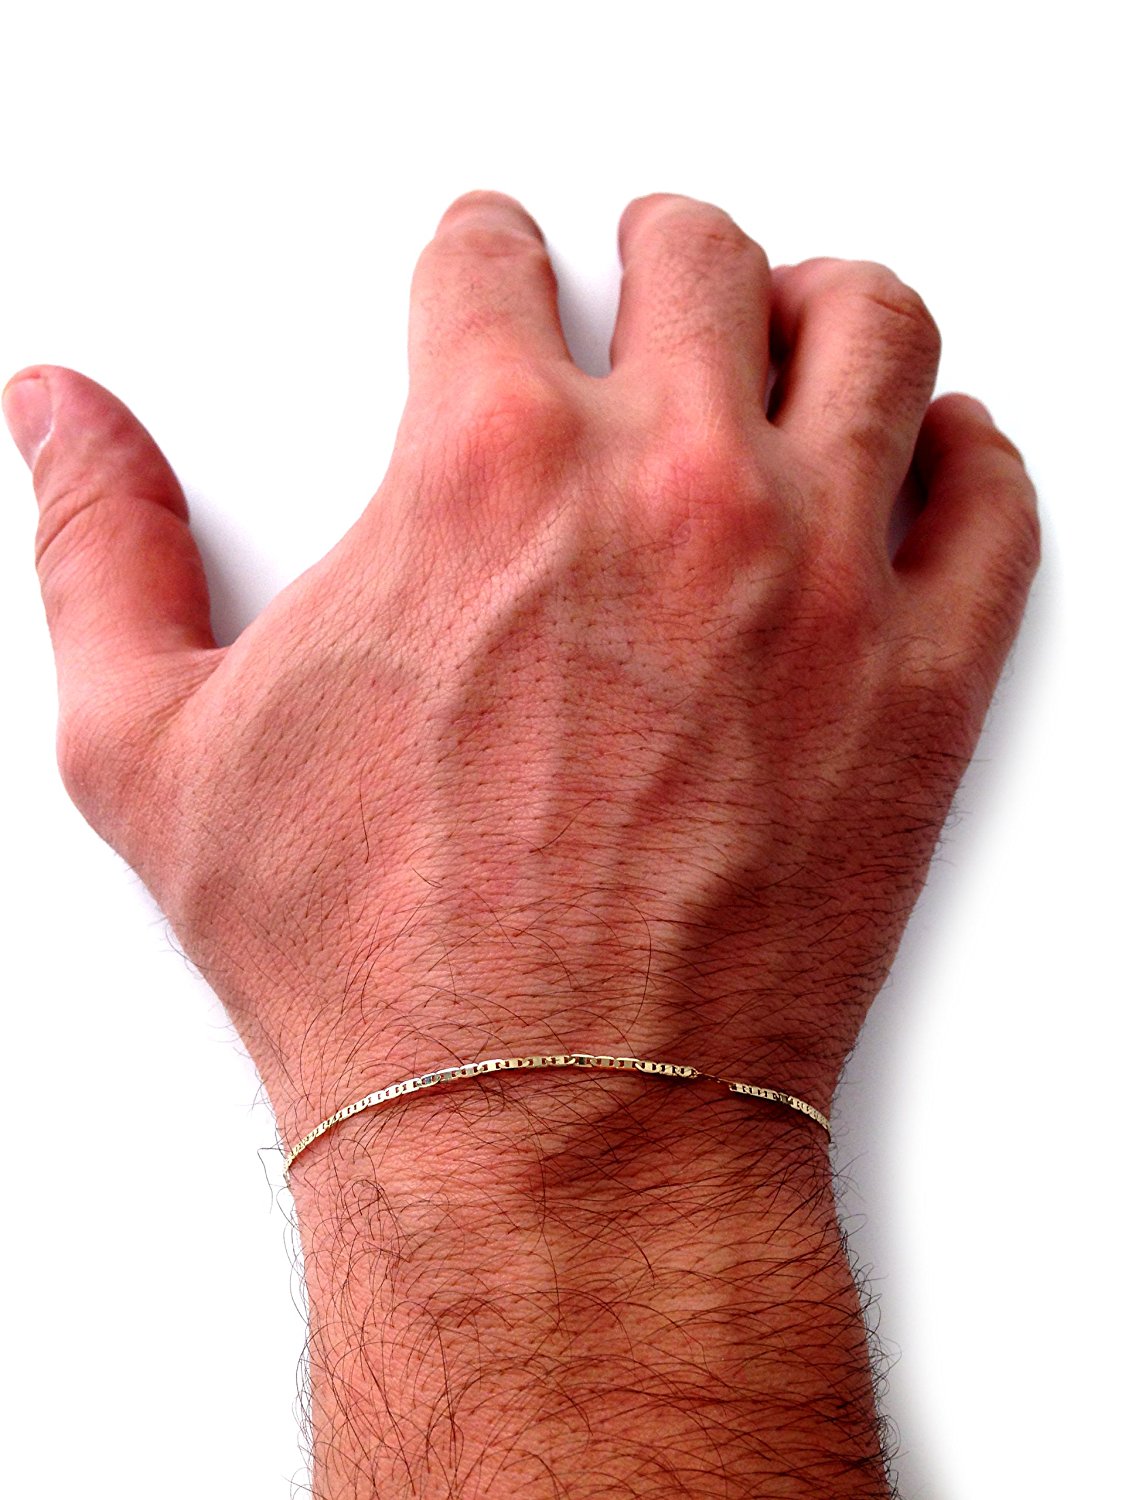 Mariner Link Chain Armbånd i 10 k gult guld, 1,2 mm fine designersmykker til mænd og kvinder